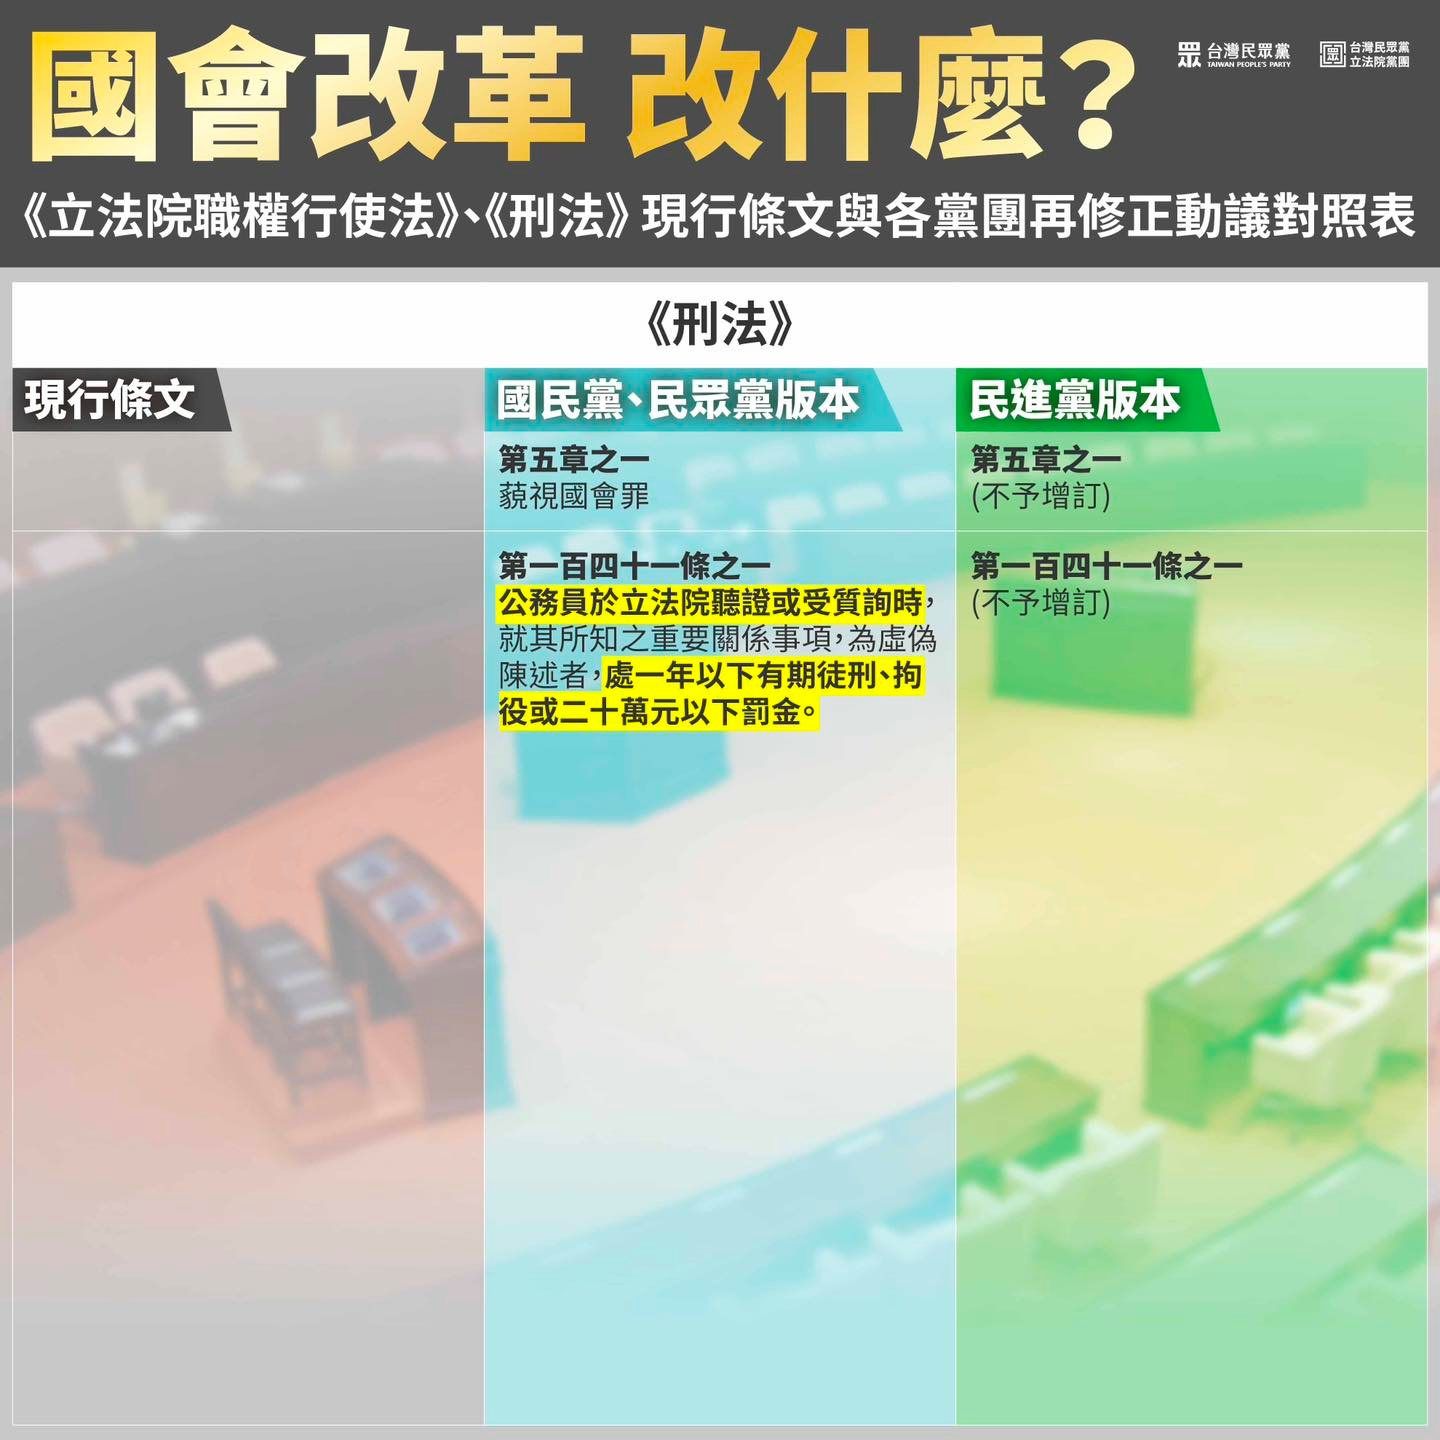 Re: [新聞] 國會改革改什麼？陳智菡整理「藍綠白3黨